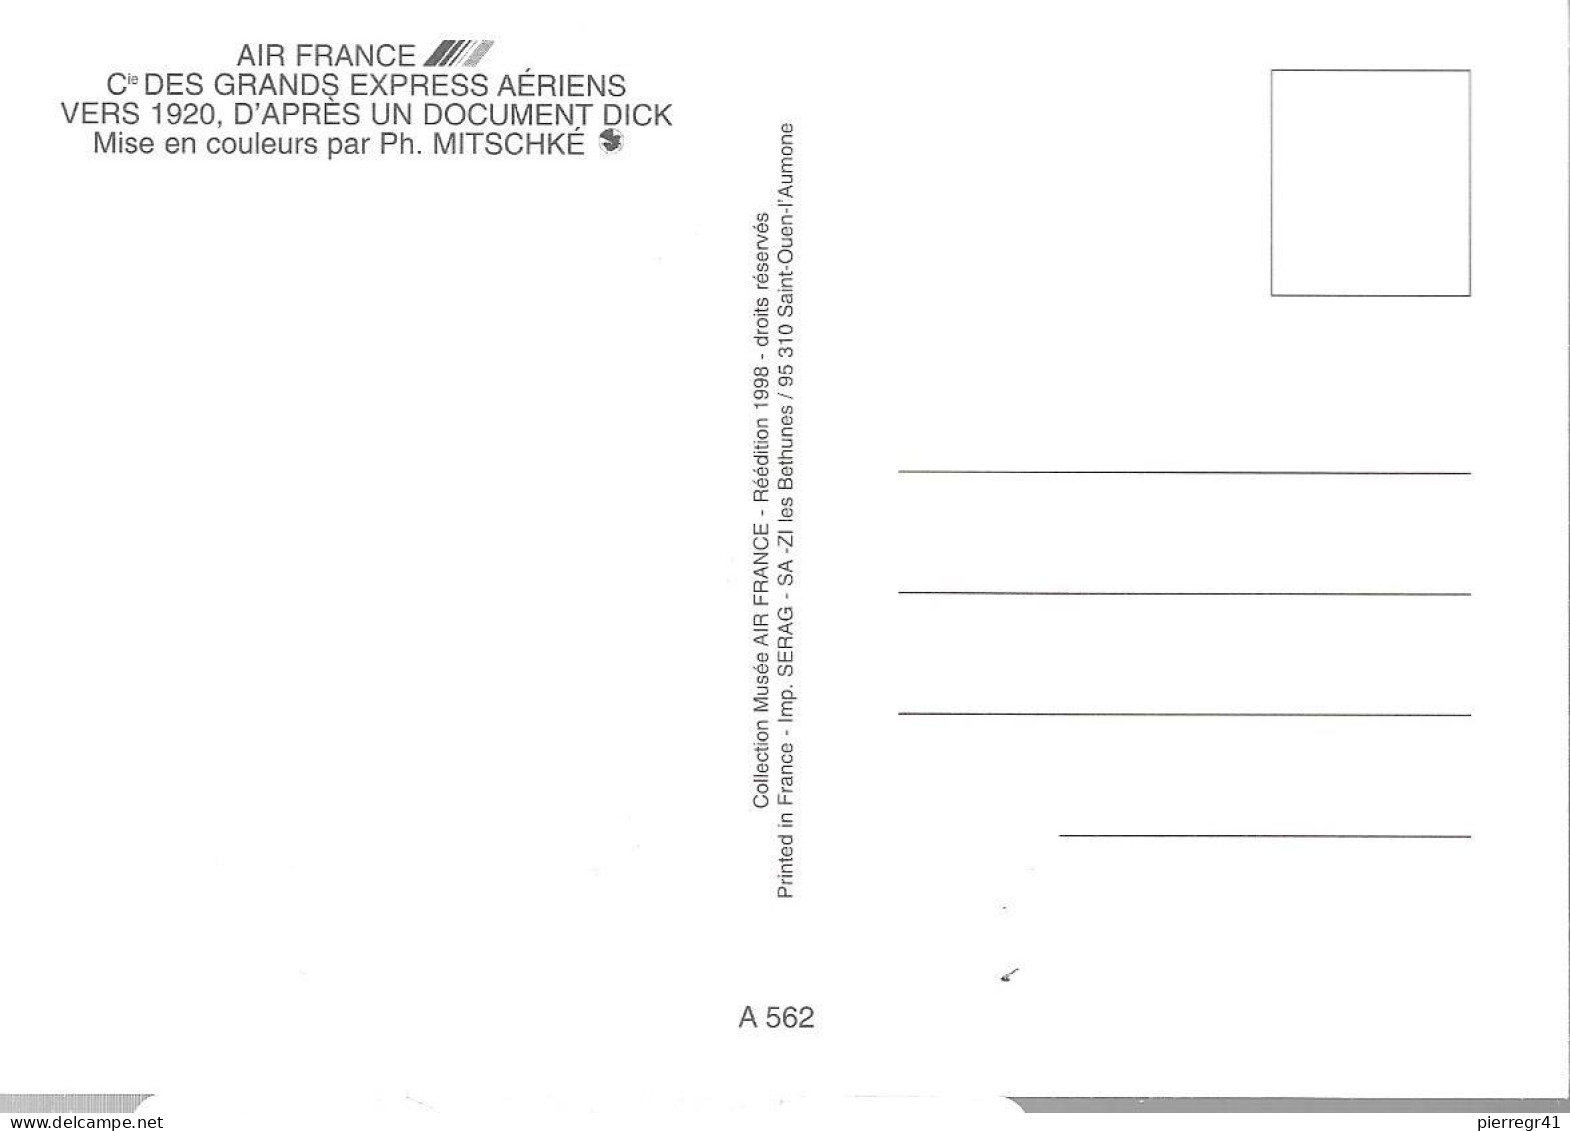 CPA-1980-AFFICHE-COPIE1920-AIR FRANCE-Cie Grands  EXPRESS Aeriens-Paris/Londres--TBE - 1919-1938